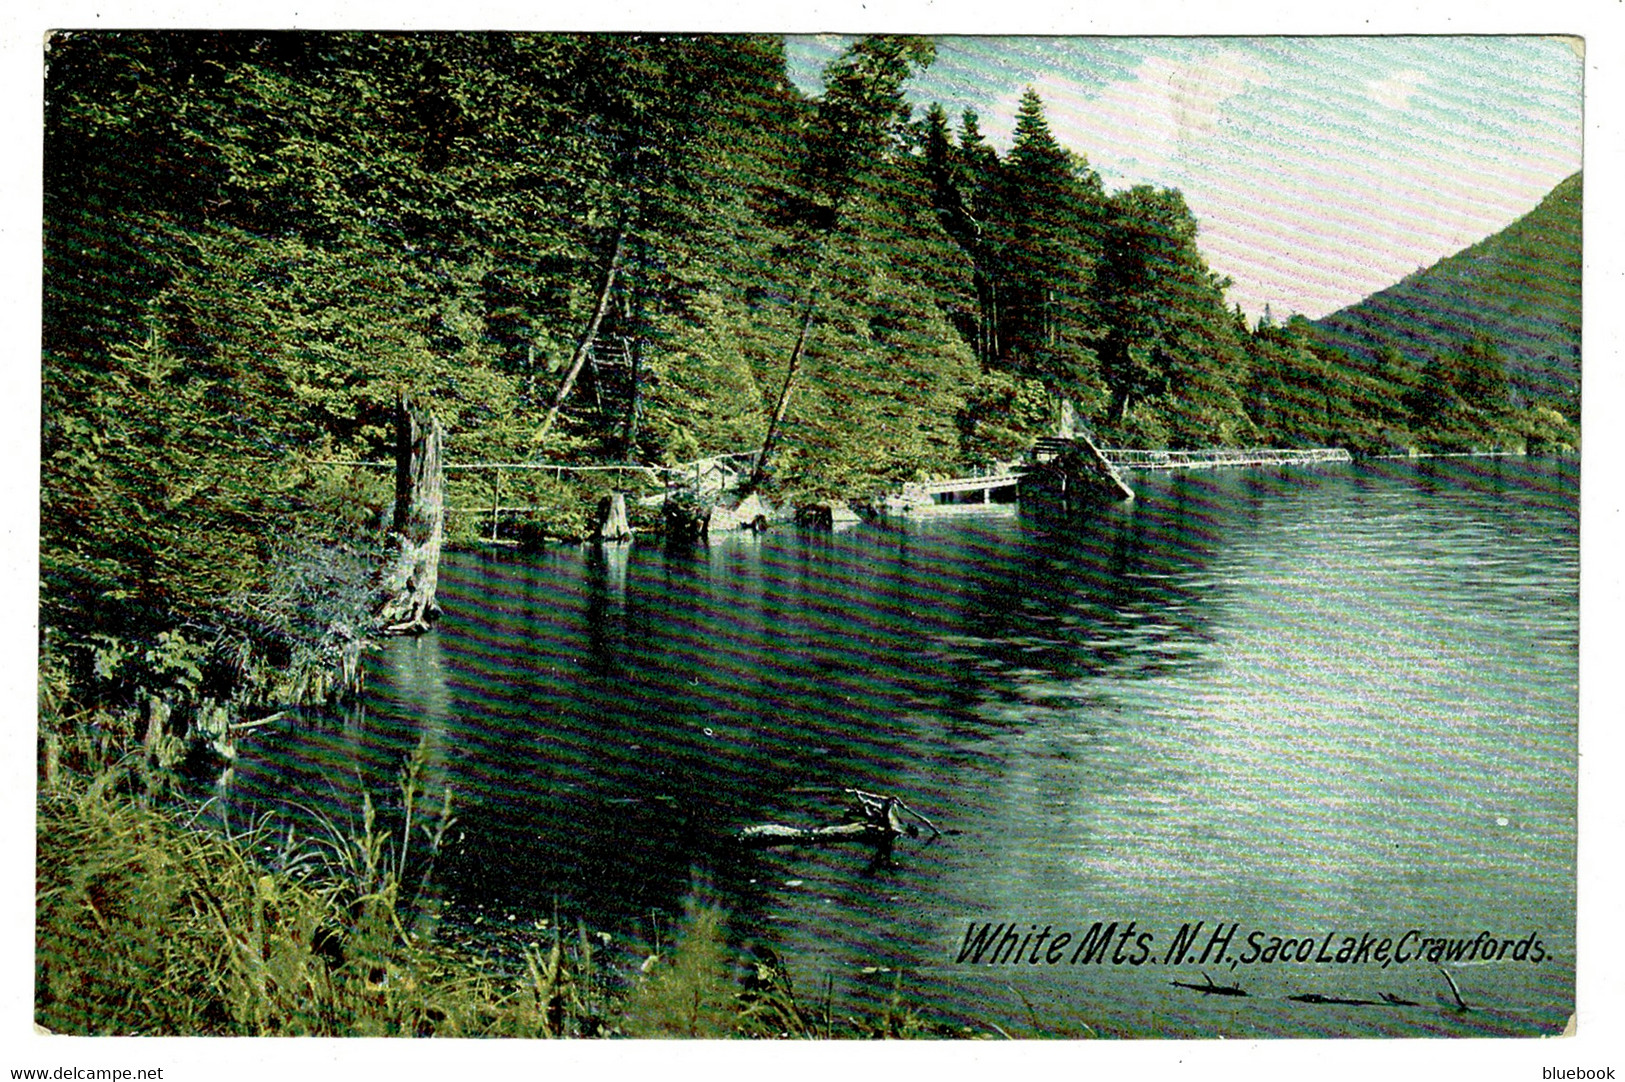 Ref 1475 - Early USA Postcard - Saco Lake Crawfords White Mountains - New Hampshire - White Mountains